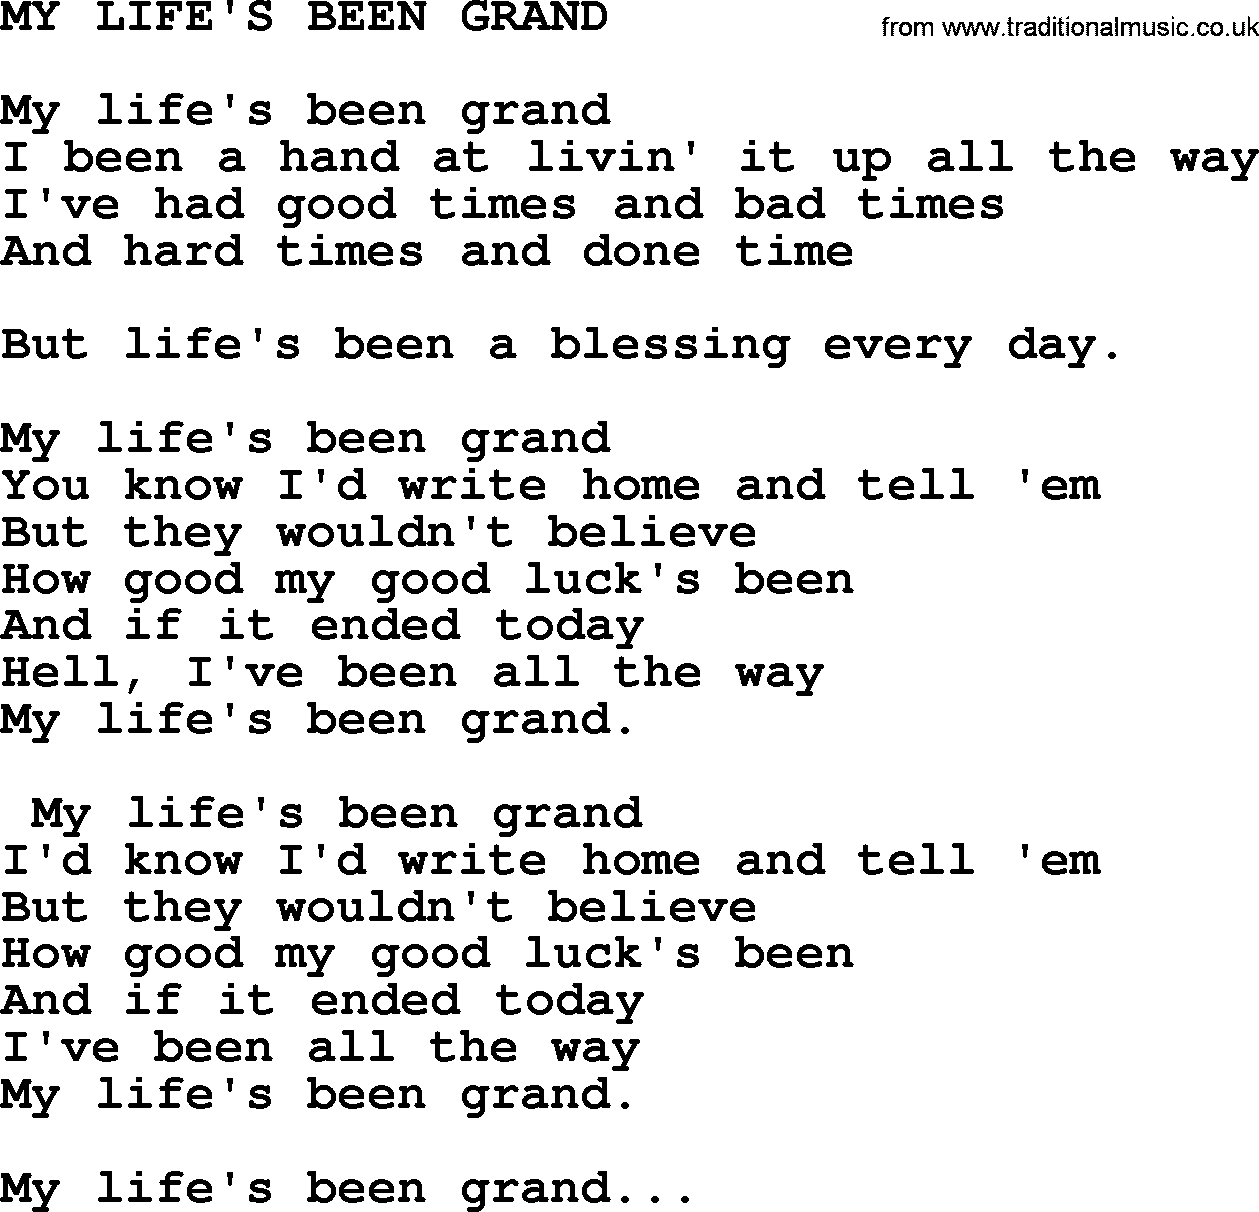 Merle Haggard song: My Life's Been Grand, lyrics.